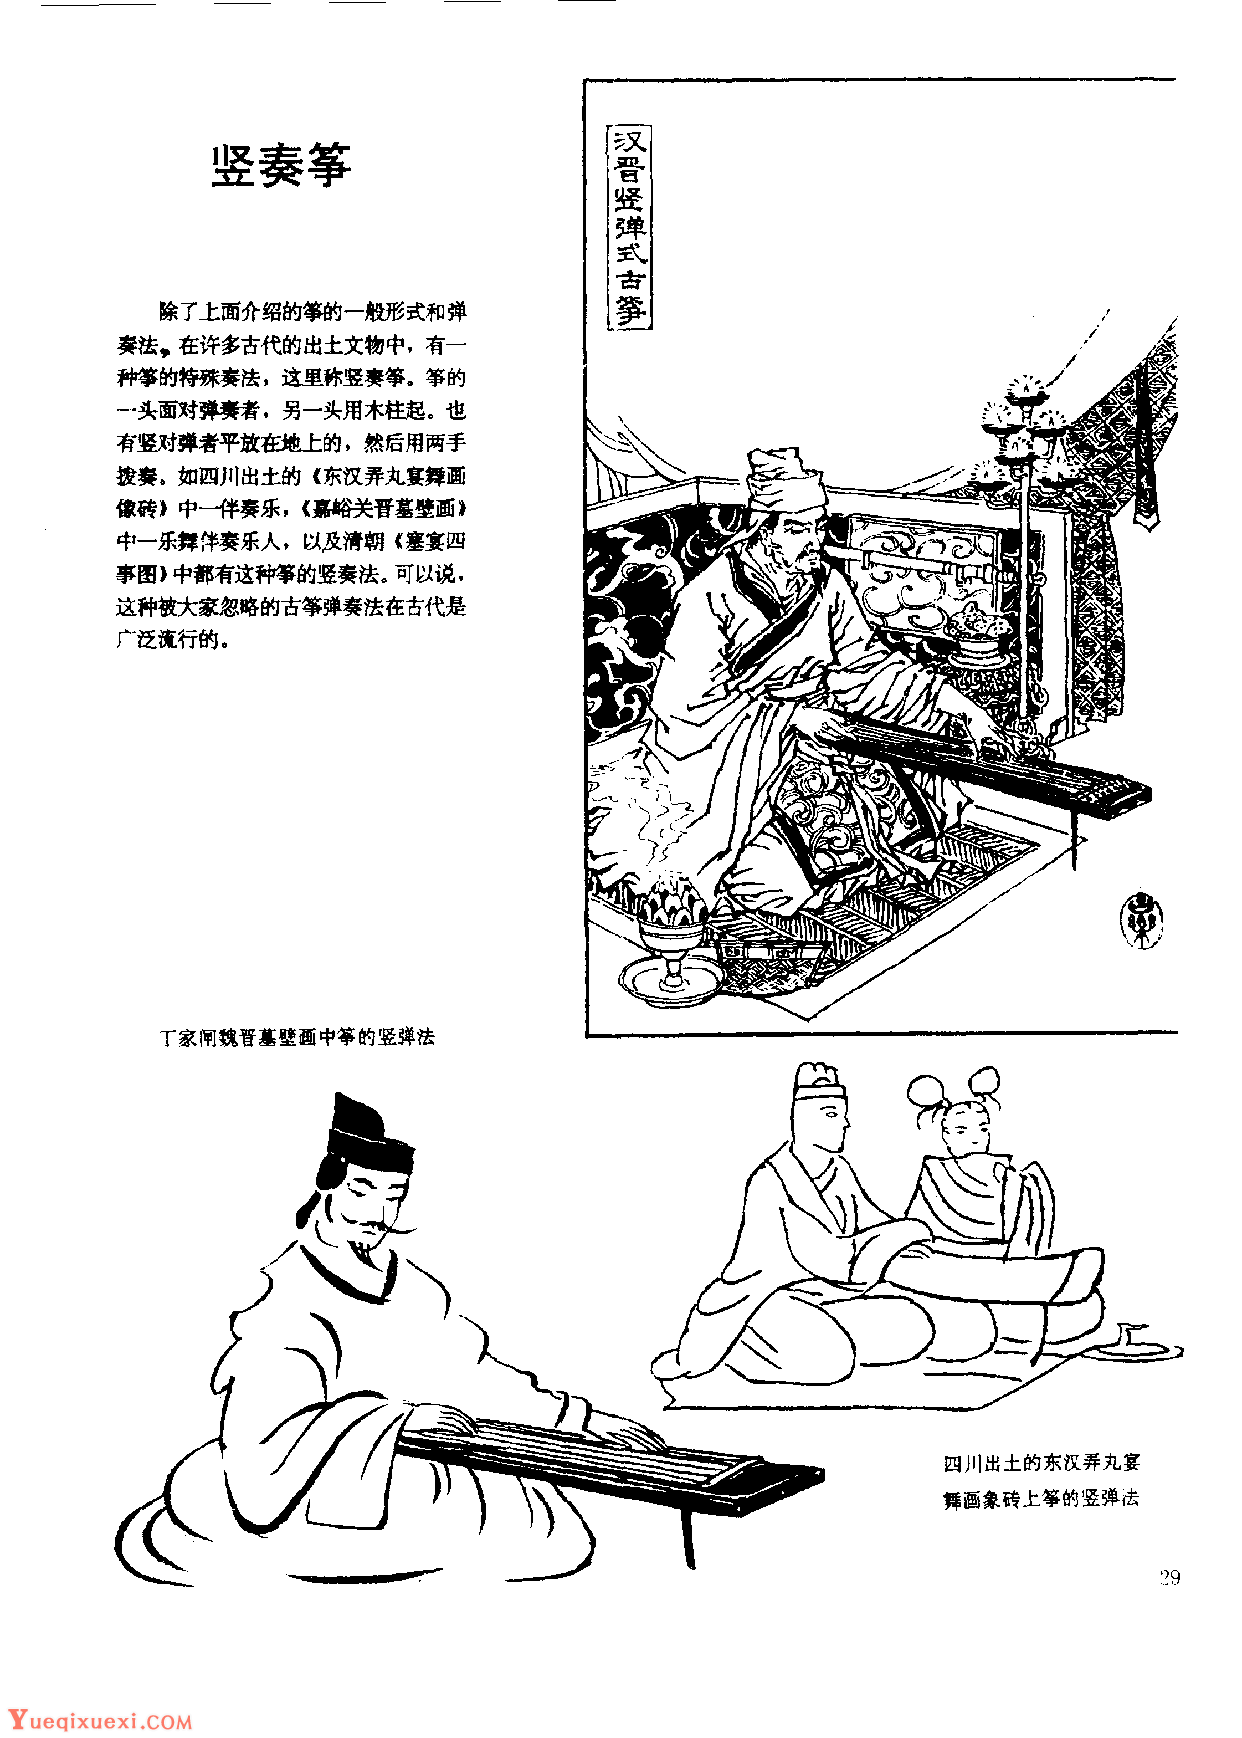 中国古代乐器《竖奏筝》